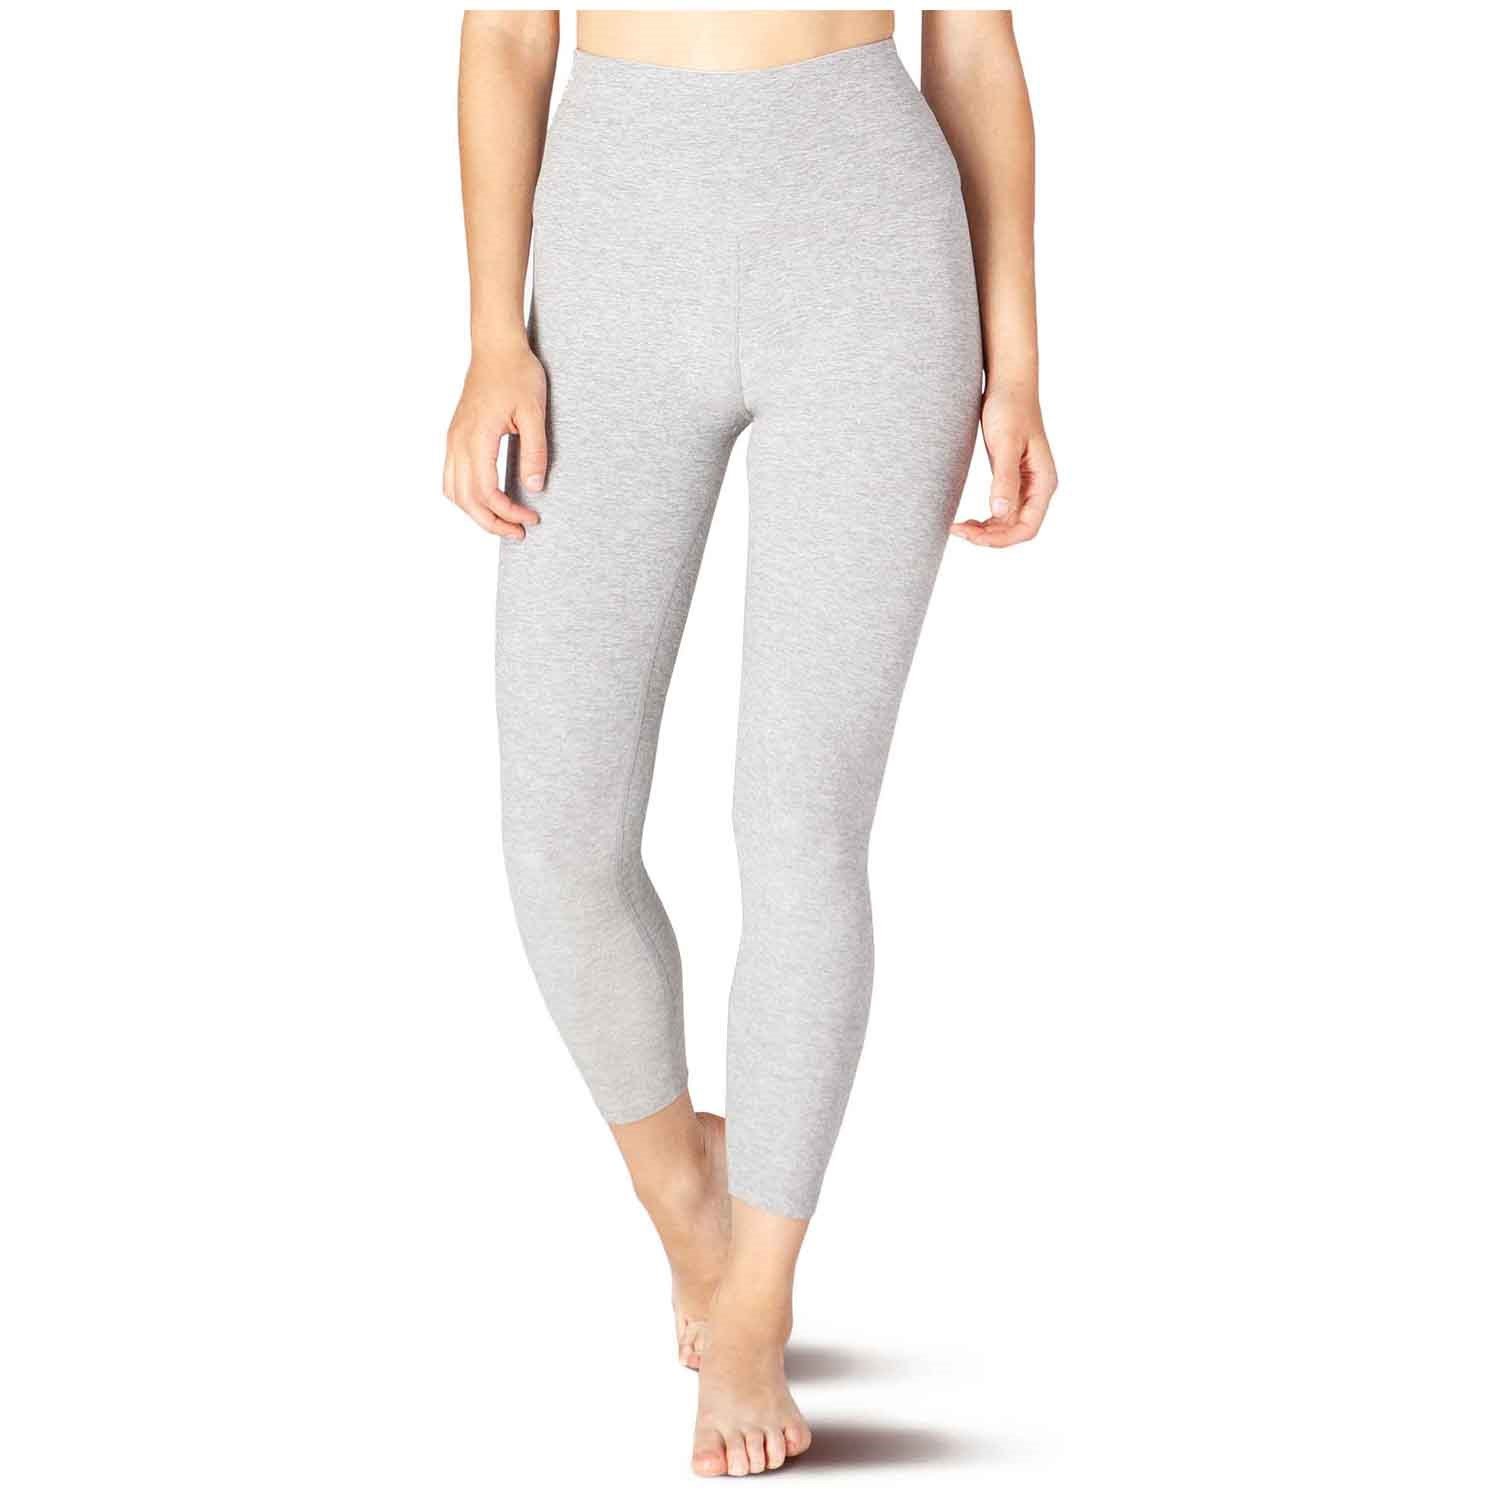 Beyond Yoga size Small gray yoga pant